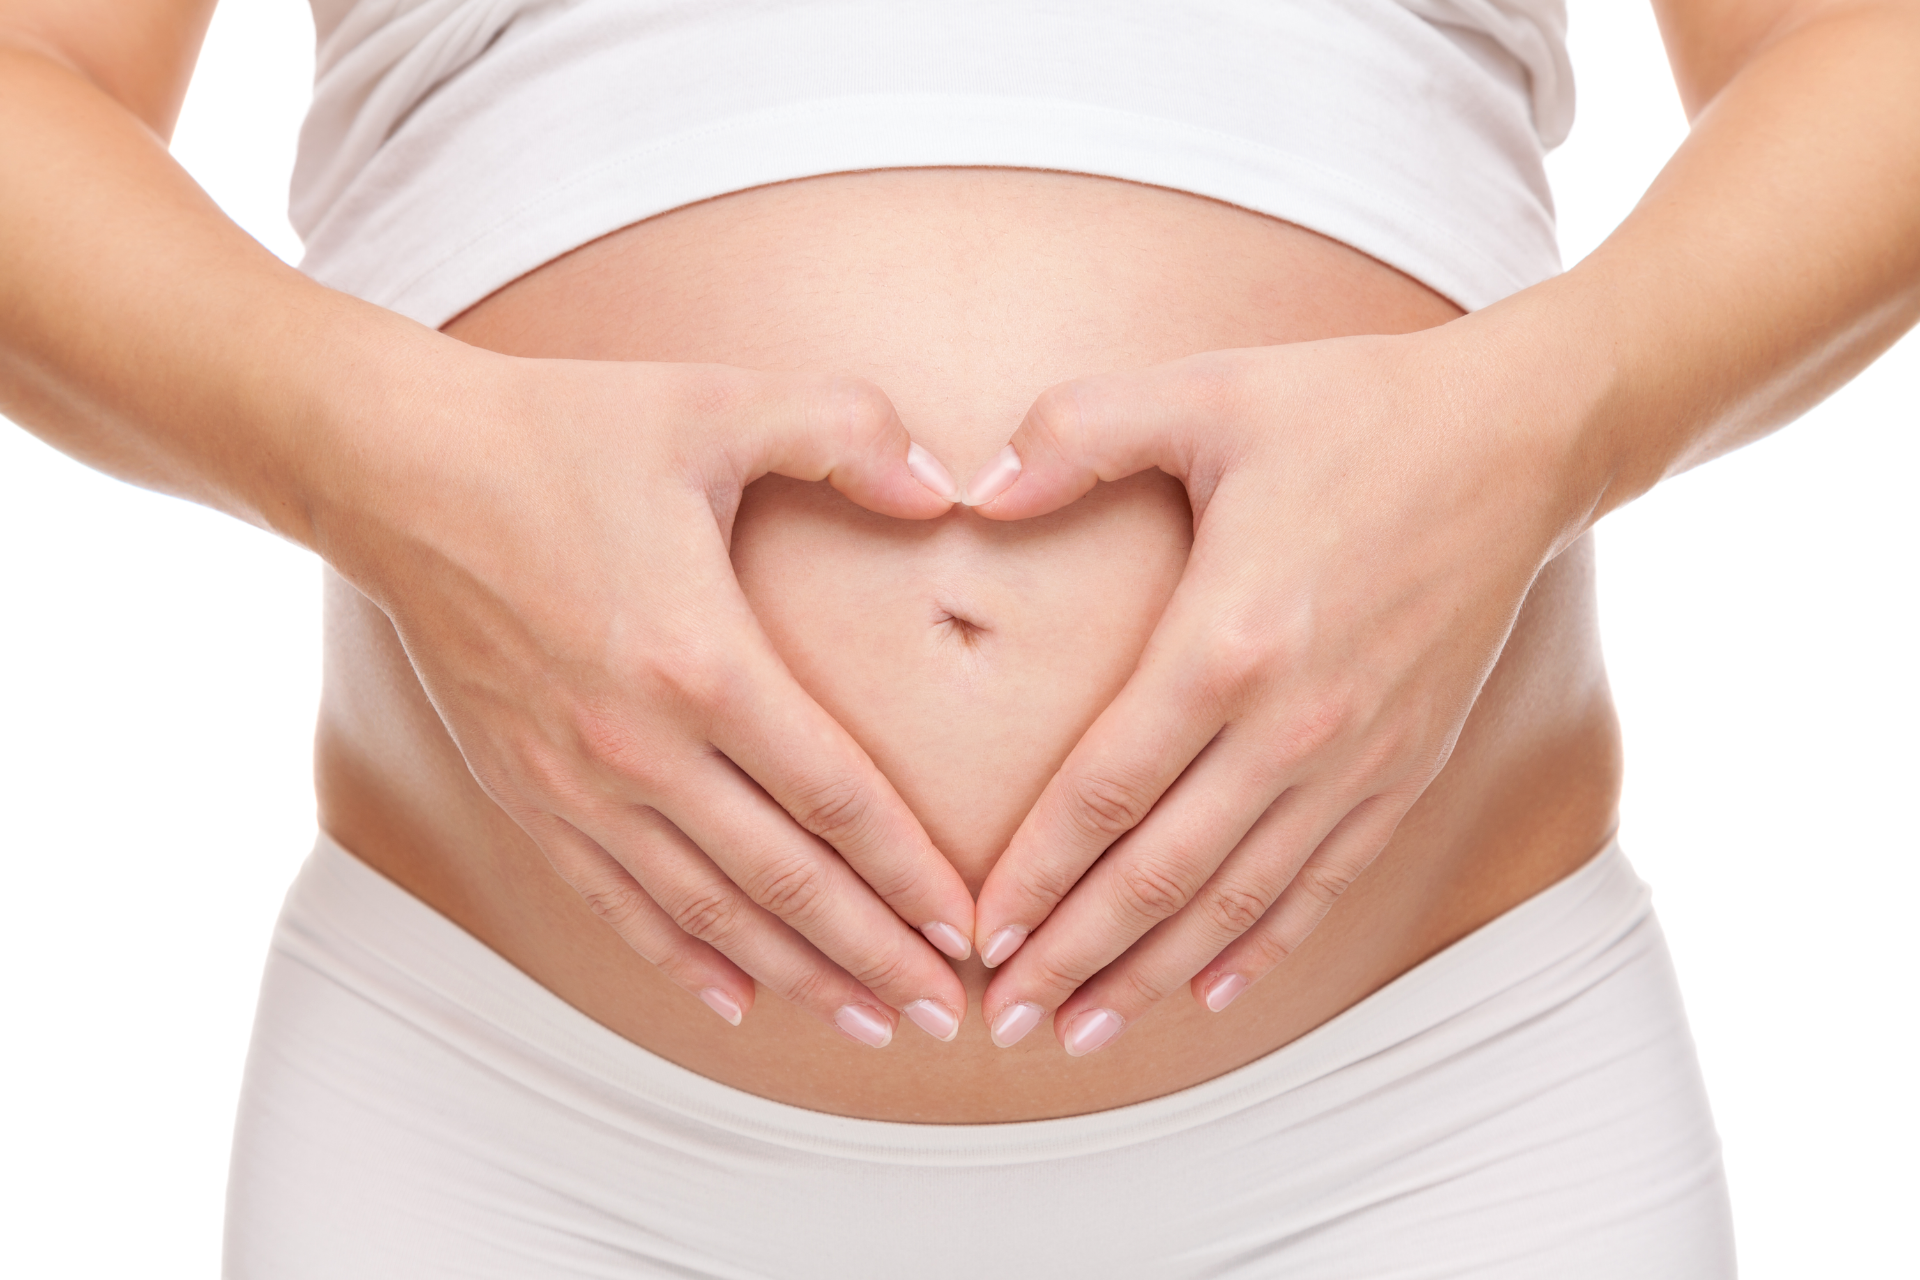 cambios en el cuerpo durante el embarazo